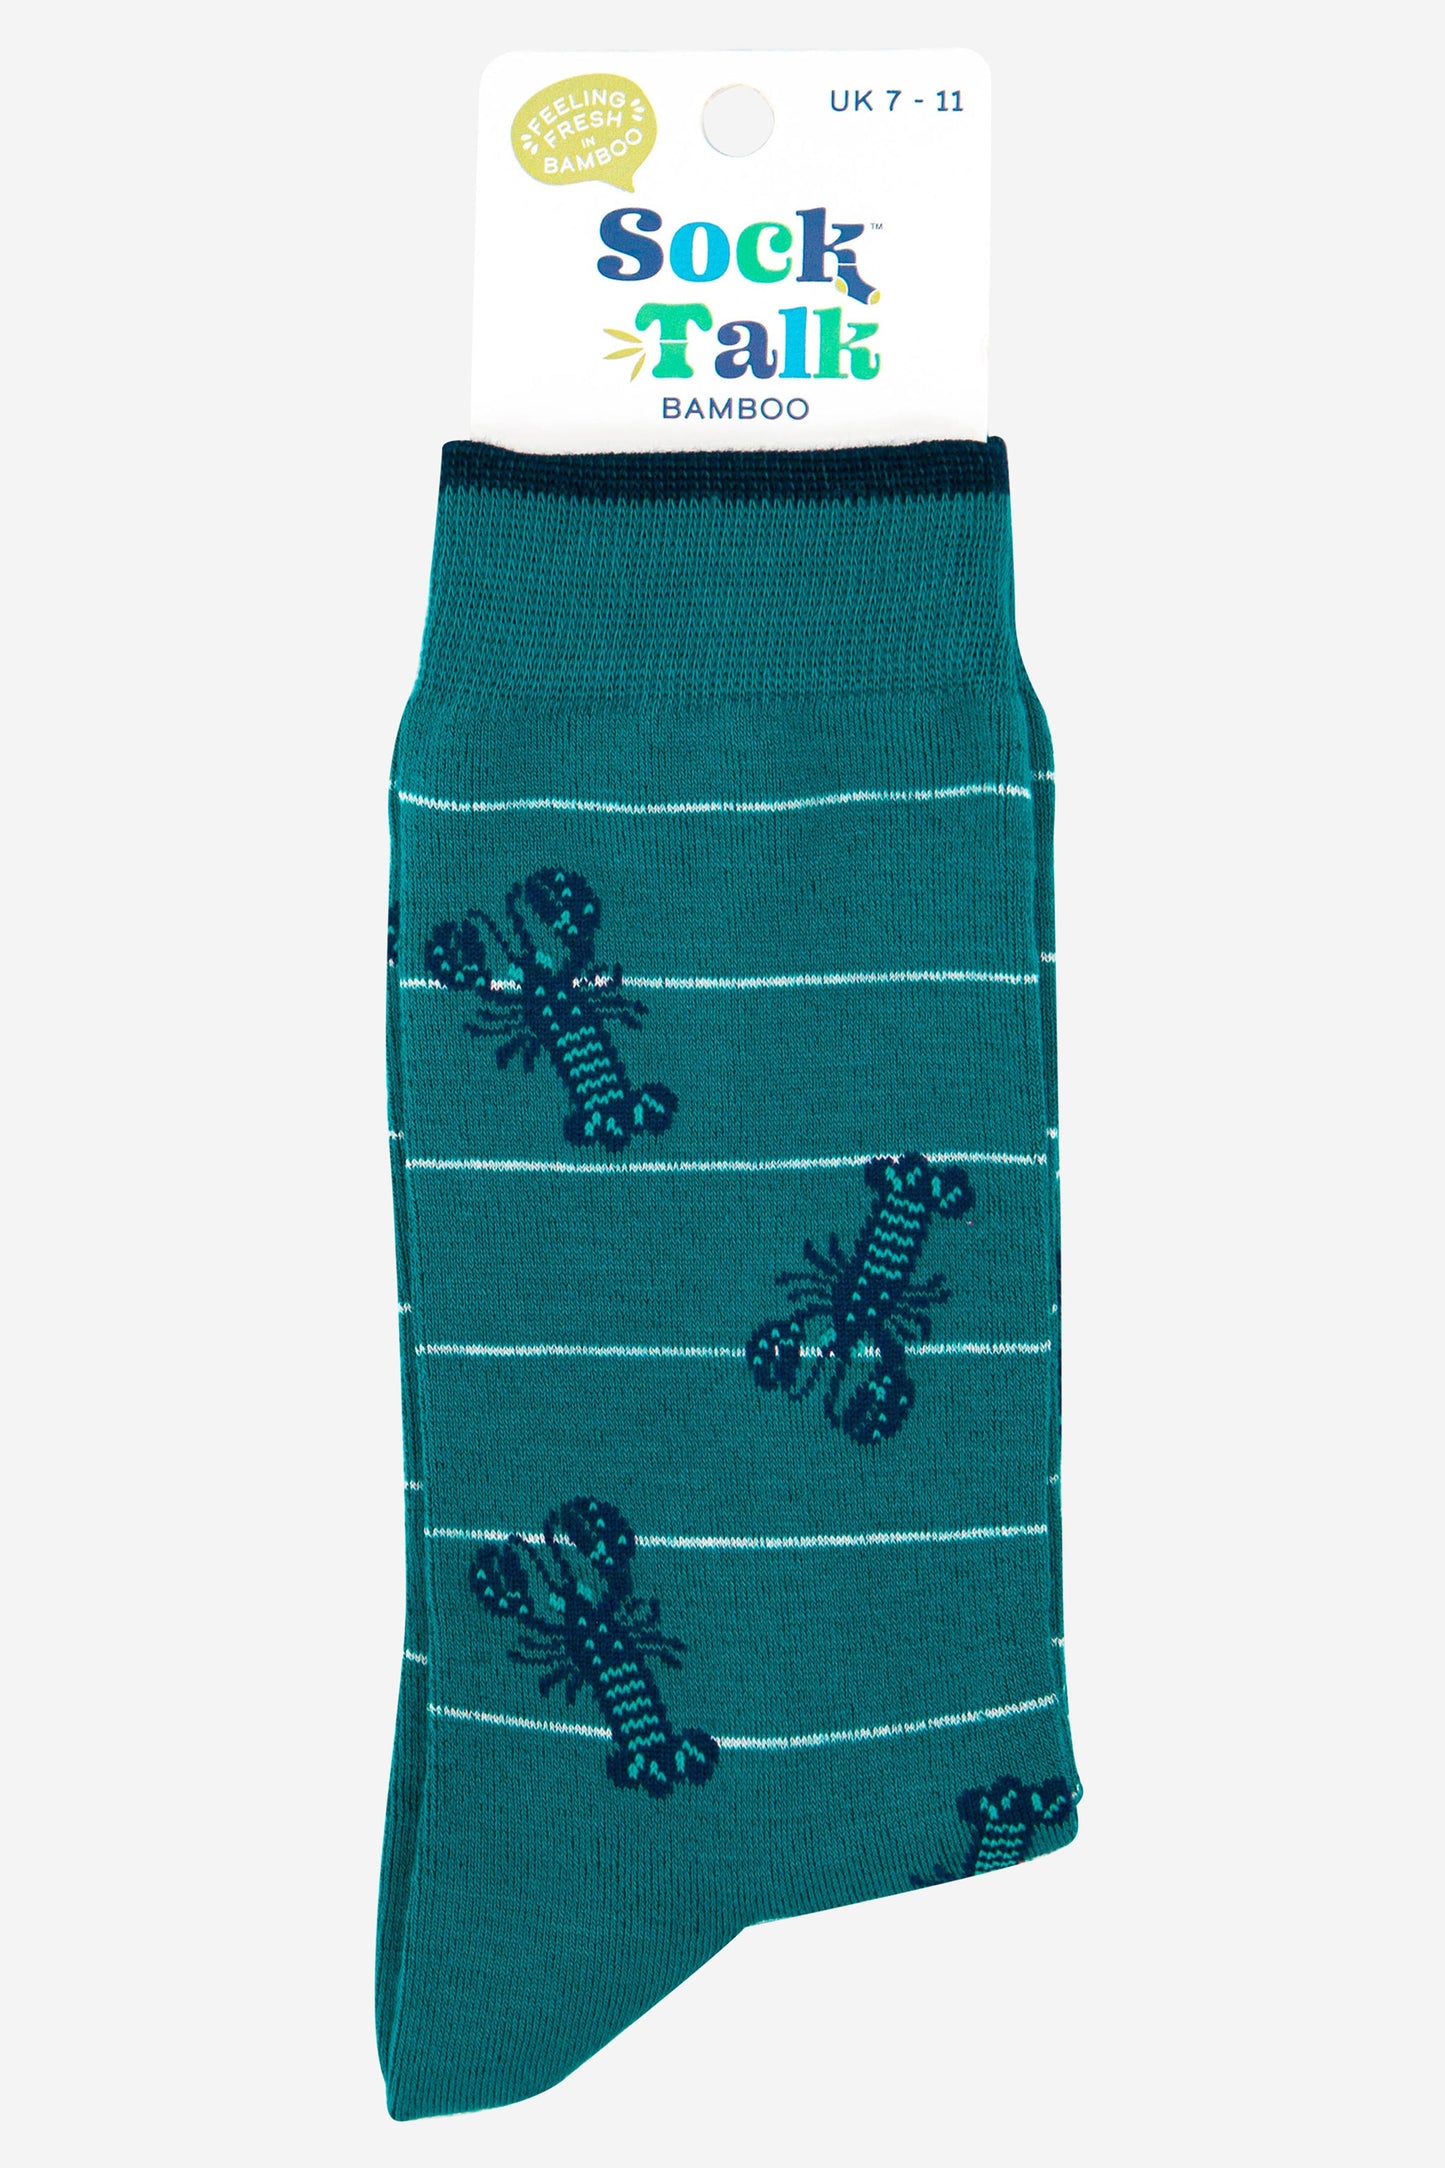 mens blue lobster bamboo socks uk size 3-7